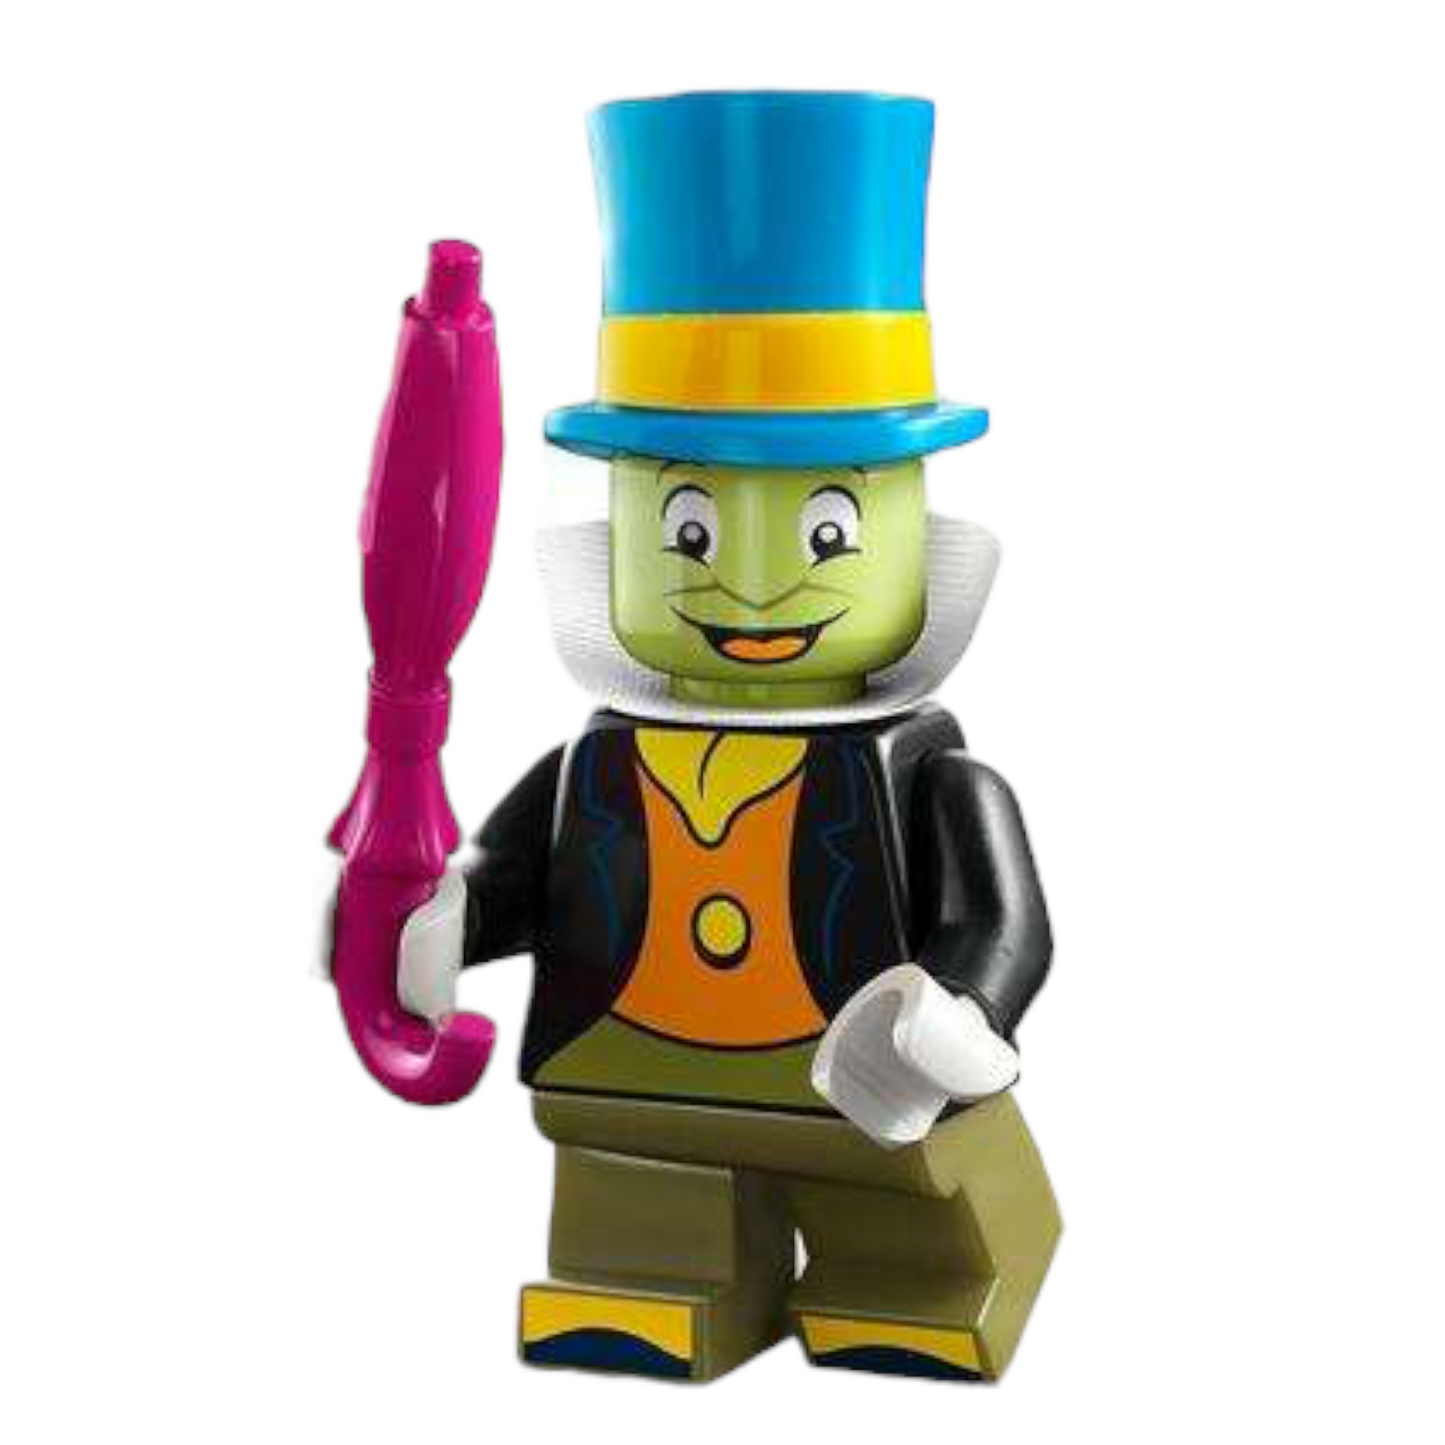 LEGO 71038 Disney - Jiminy Cricket